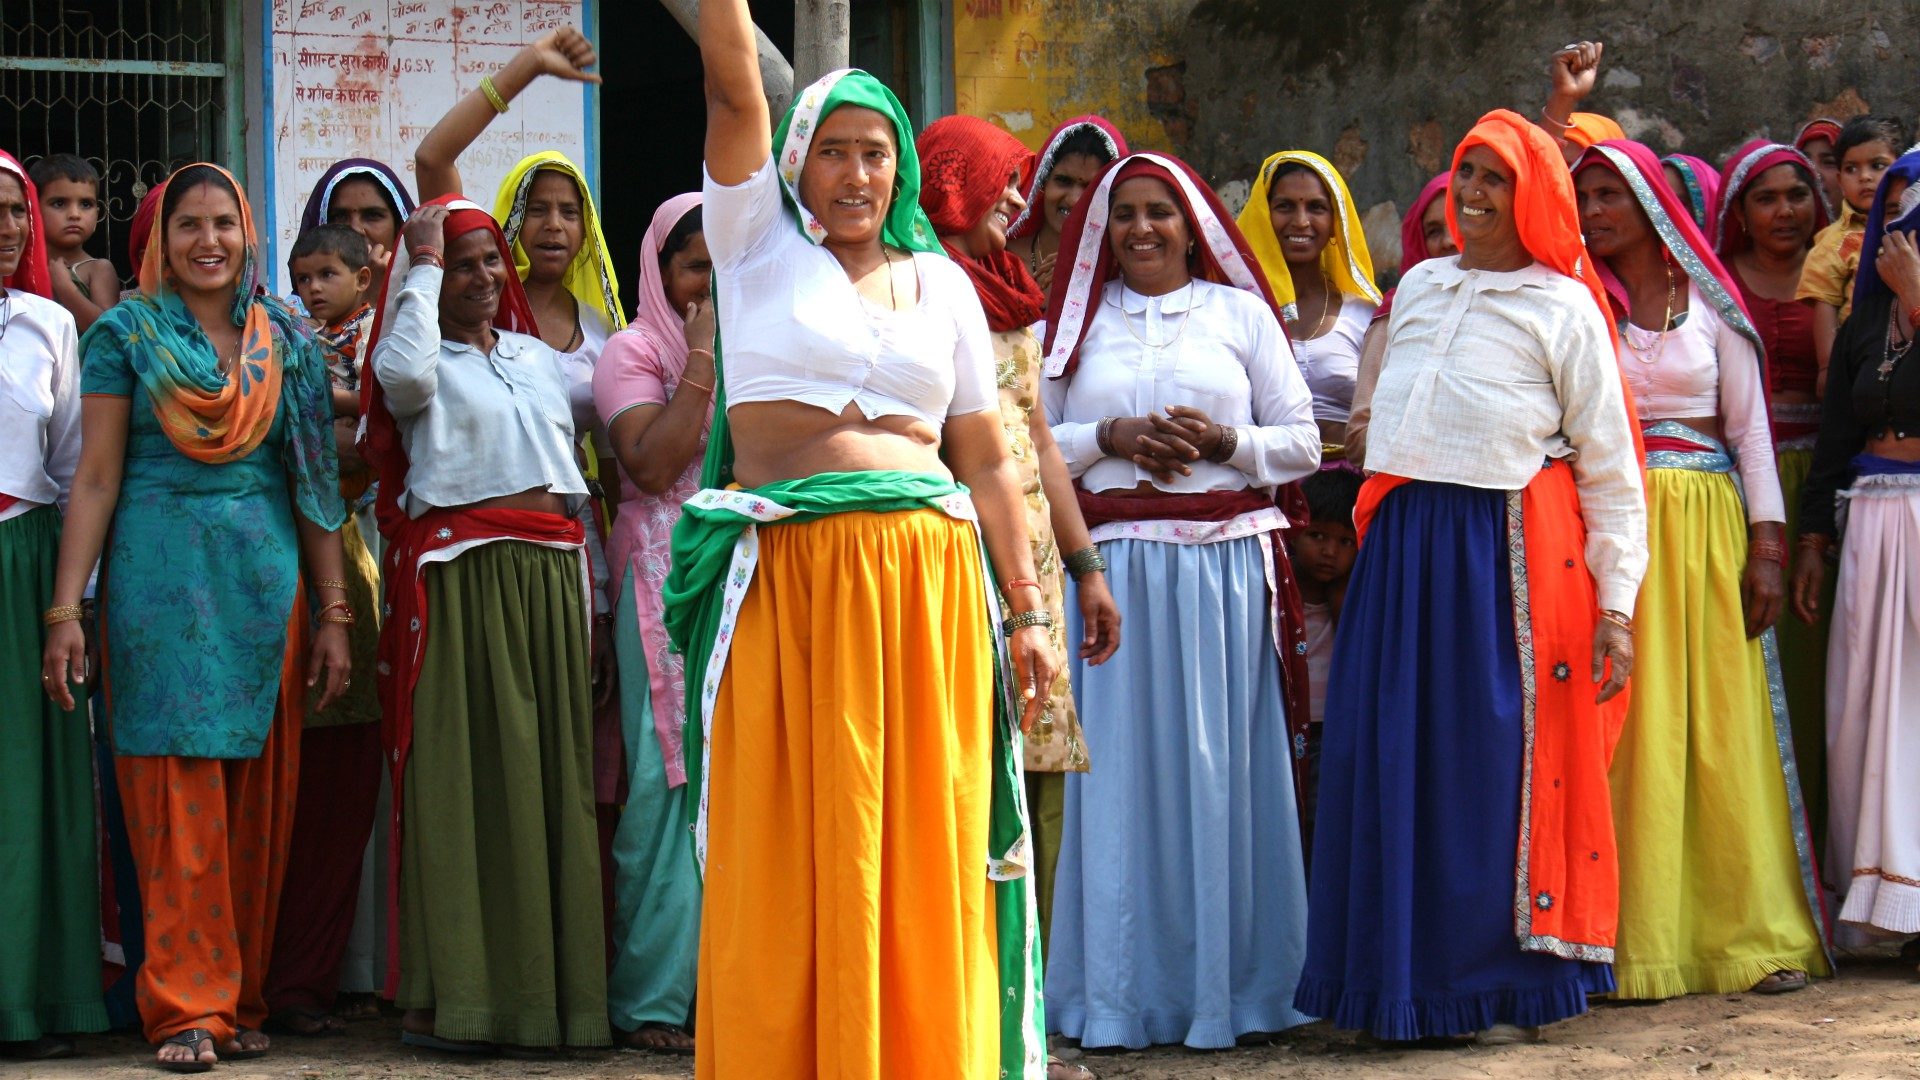 L'Action Sainte-Elisabeth s'efforce d'élever le statut des femmes dans les pays pauvres (Photo d'illustration: UN Women Asia and the Pacific/Flickr/CC BY-NC-ND 2.0)